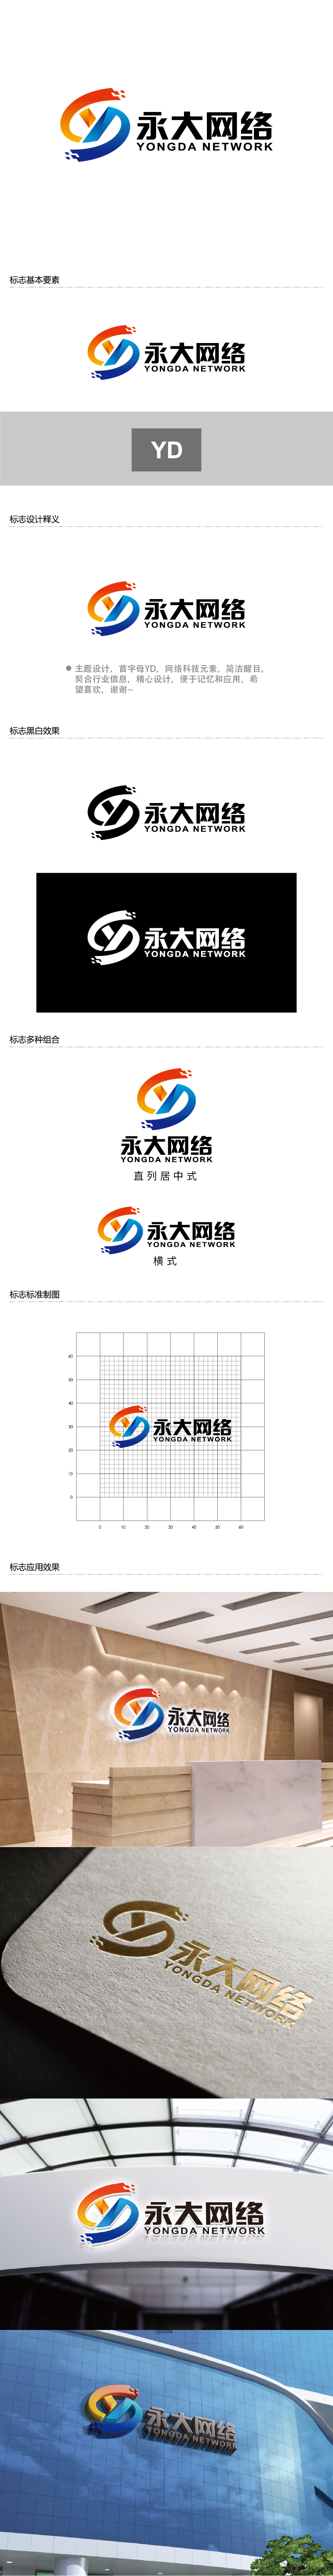 王涛的永大网络logo设计